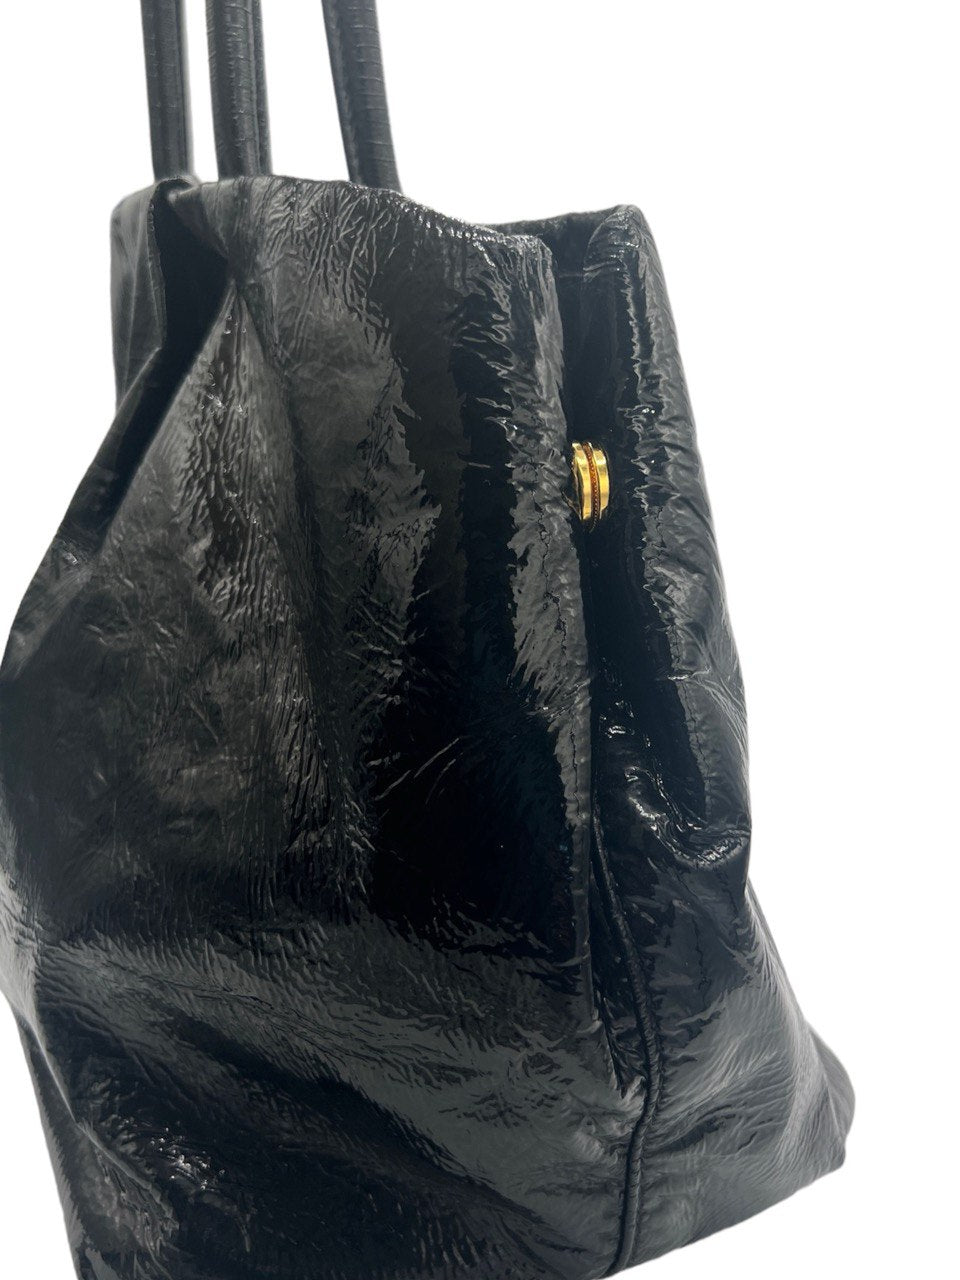 PRADA - Black Patent Leather Tote Bag